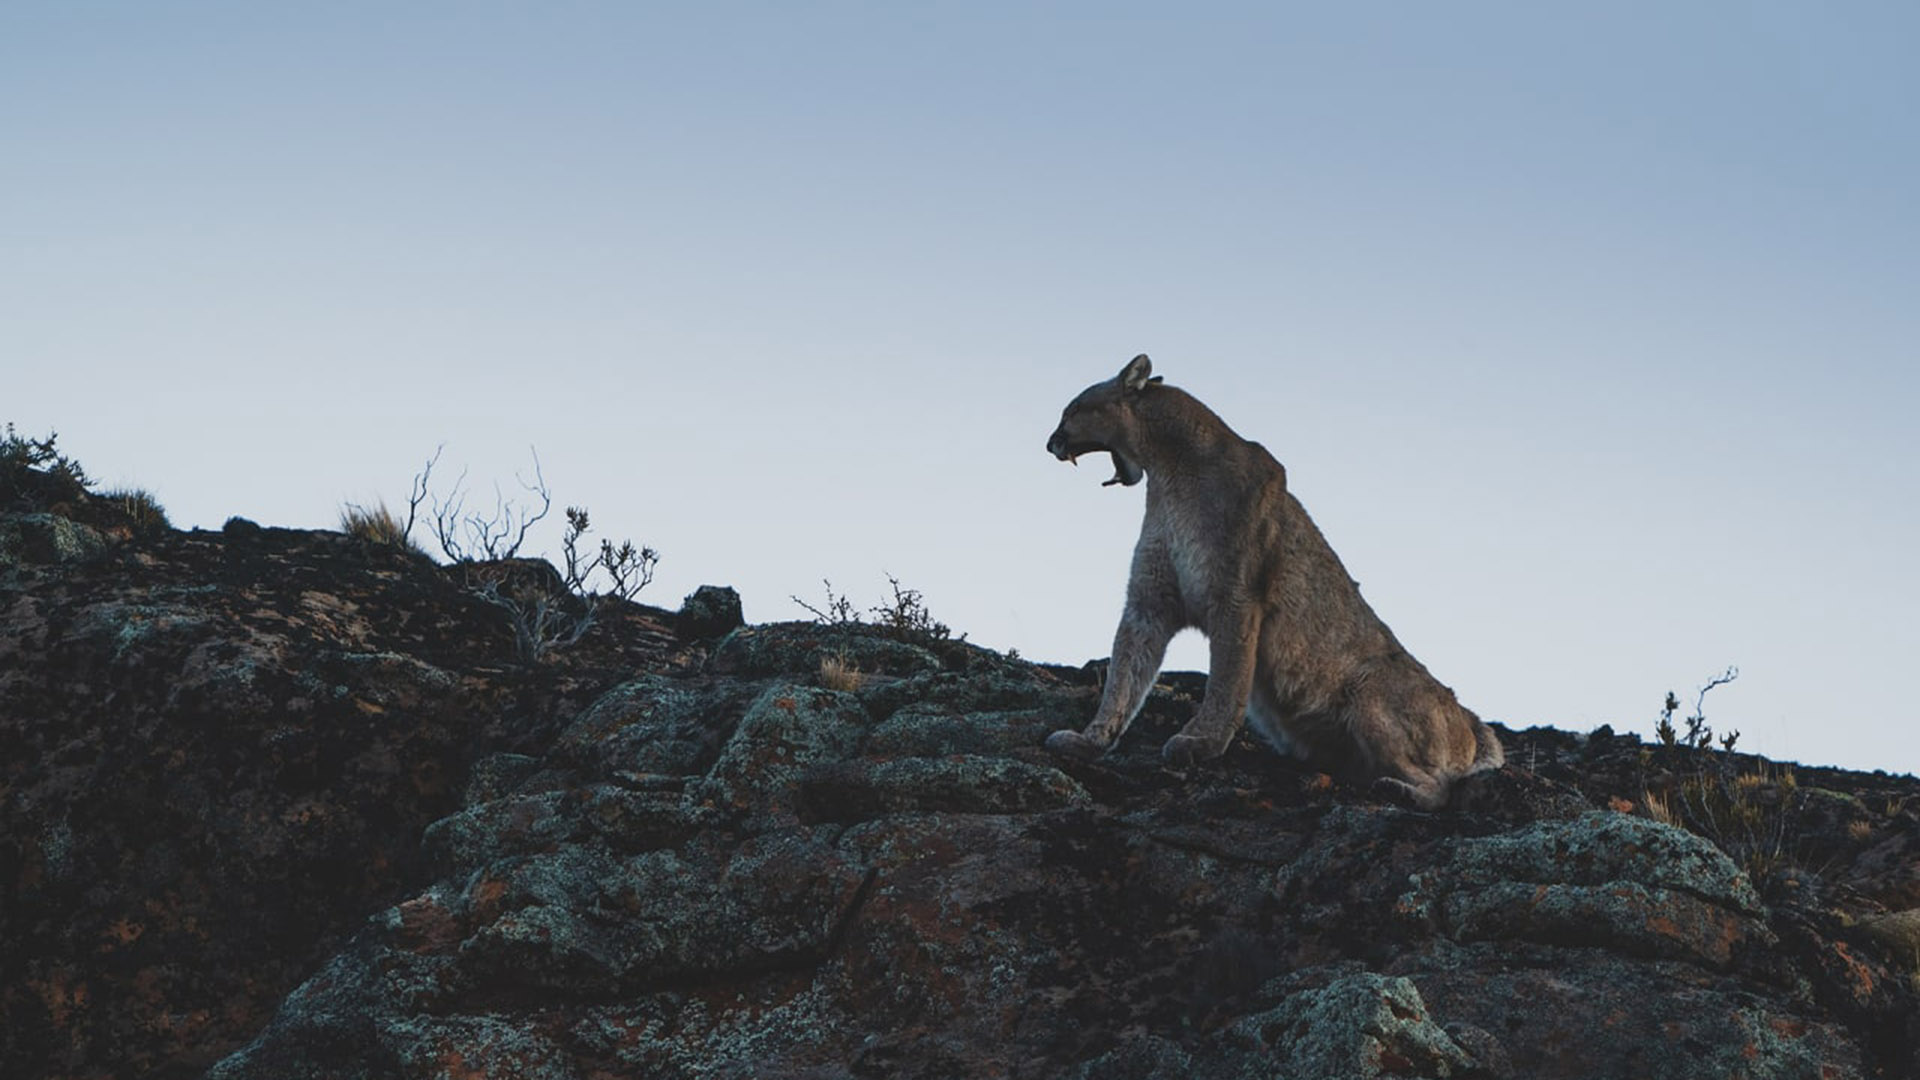 La convocatoria del mes de julio será: “En busca del Puma” en Parque Patagonia, por los paisajes más espectaculares para pasar 4 días en busca del predador tope de la Patagonia
@argentina_wild_expeditions